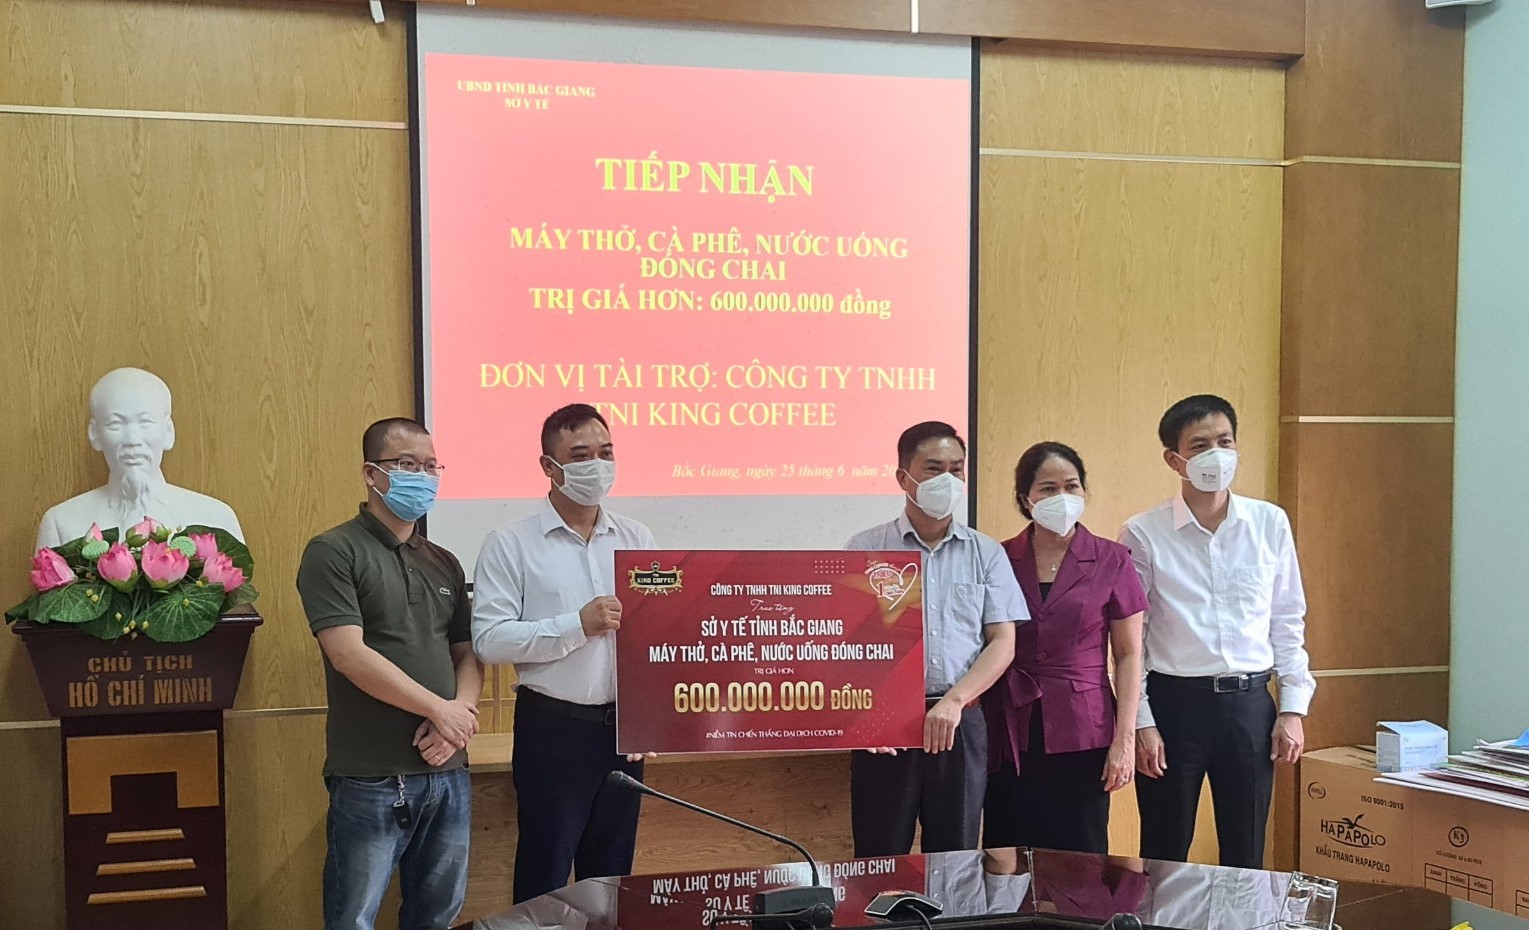 TNI King Coffee trao tặng cà phê, nước suối, máy thở cho y bác sĩ cứu chữa bệnh nhân Covid-19 tỉnh Bắc Giang